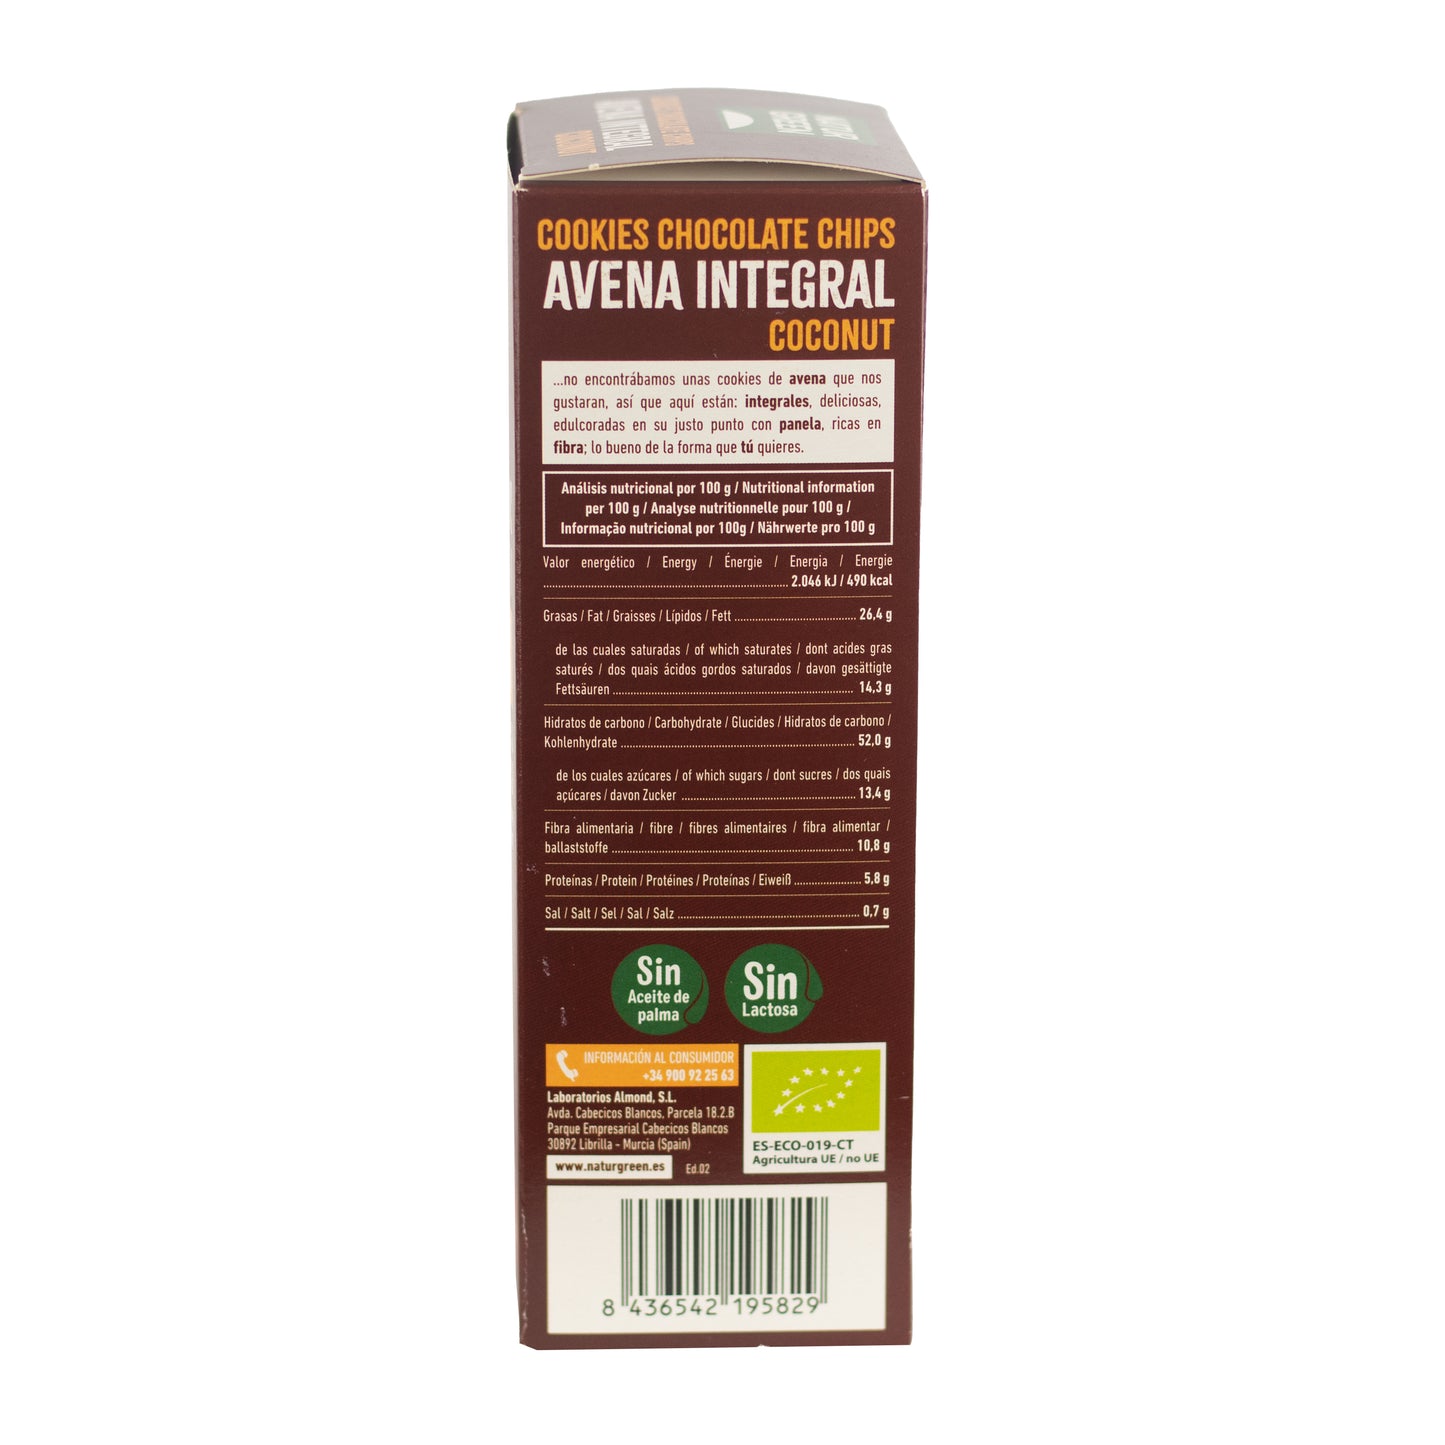 Cookie de Avena Integral con Coco Bio 140g NaturGreen